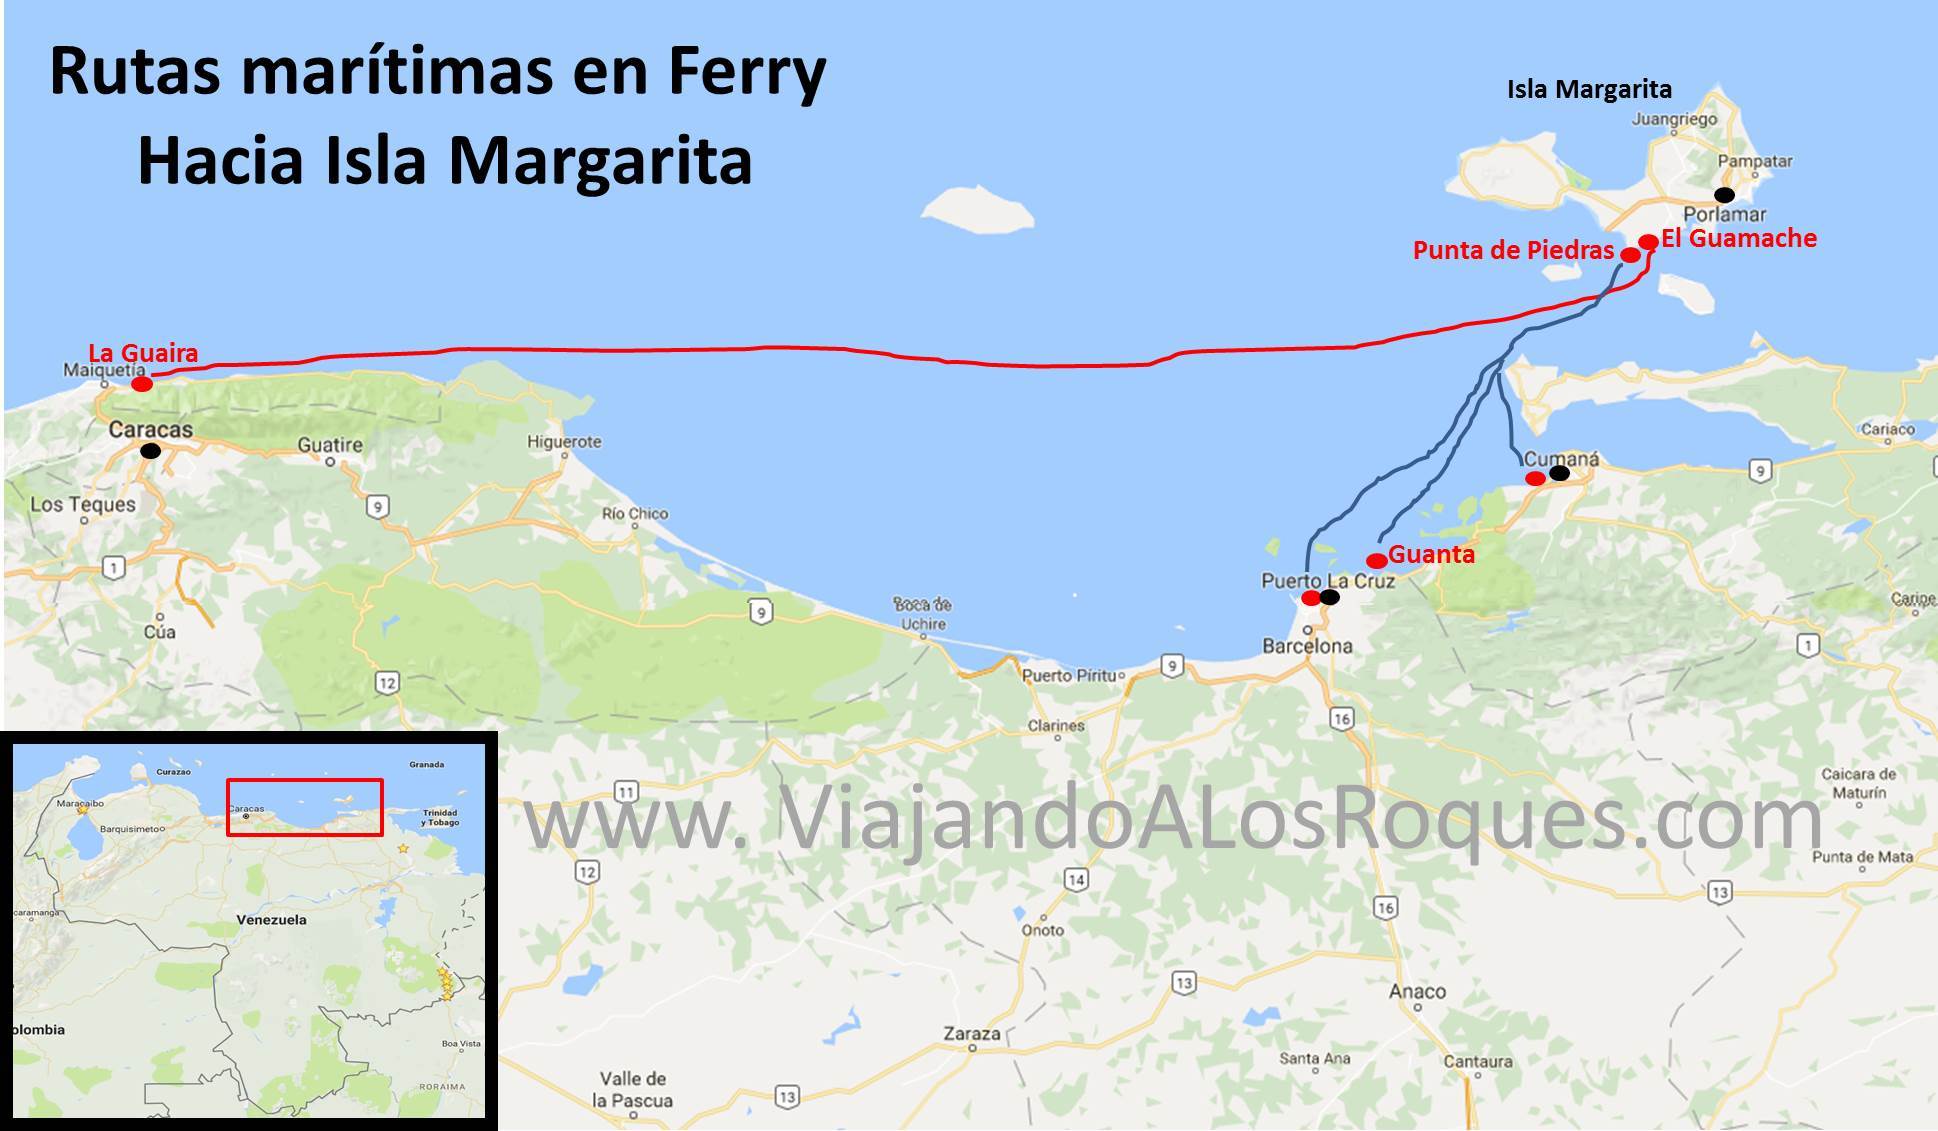 Ruta-maritima-ferry-isla-margarita-la-guaira-cumana-puerto-la-cruz